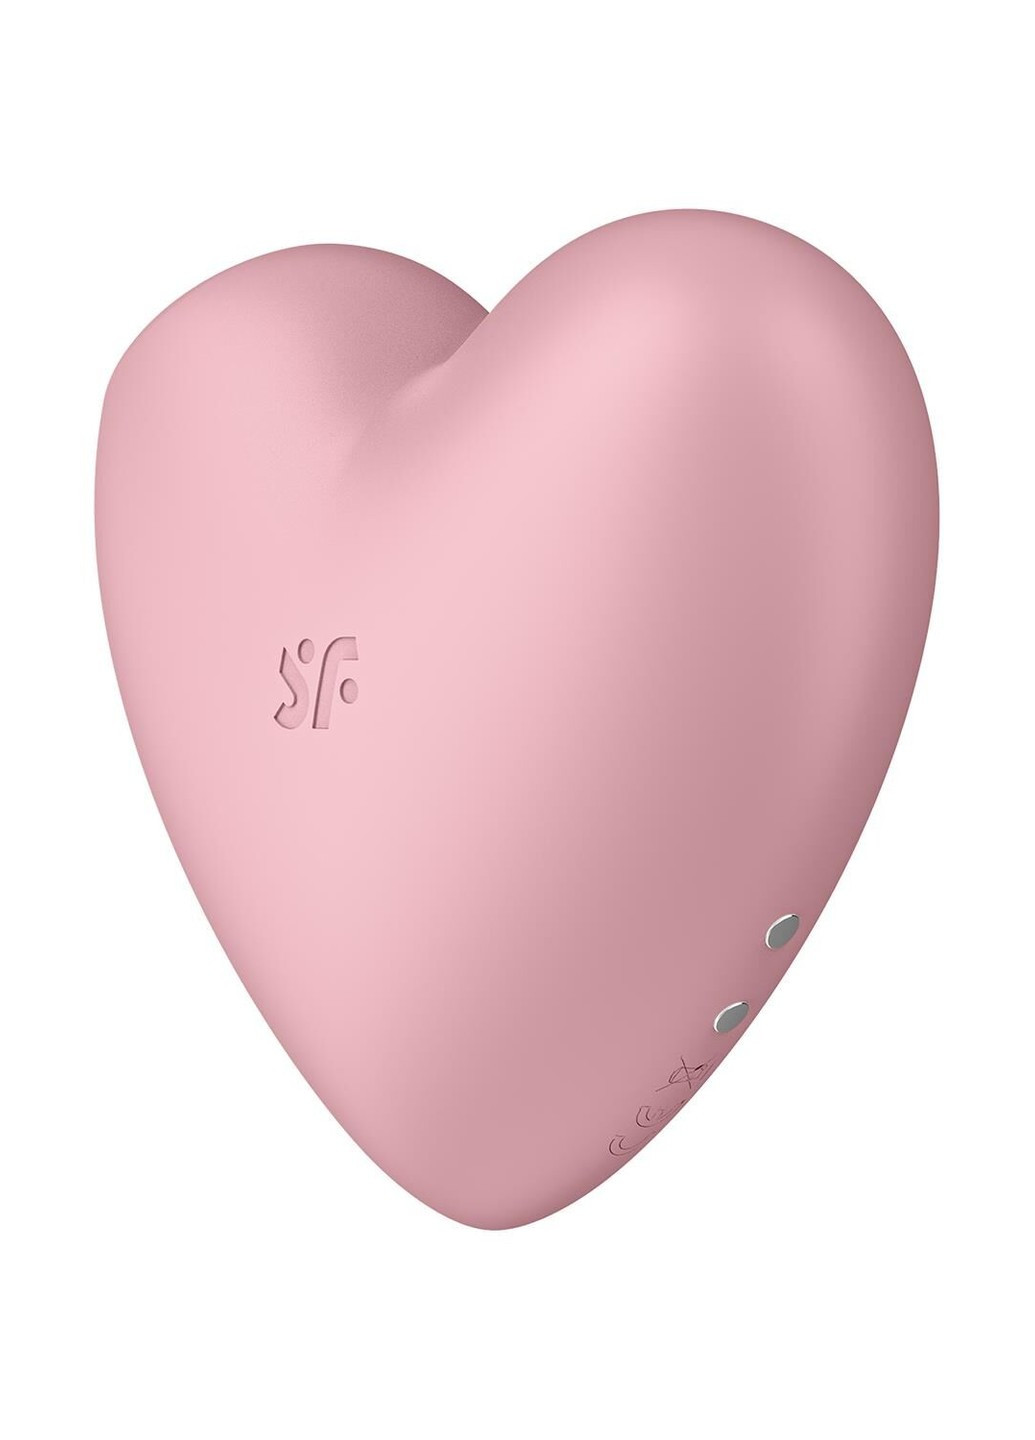 Вакуумный стимулятор-сердечко с вибрацией Cutie Heart Light Red Satisfyer (258261621)